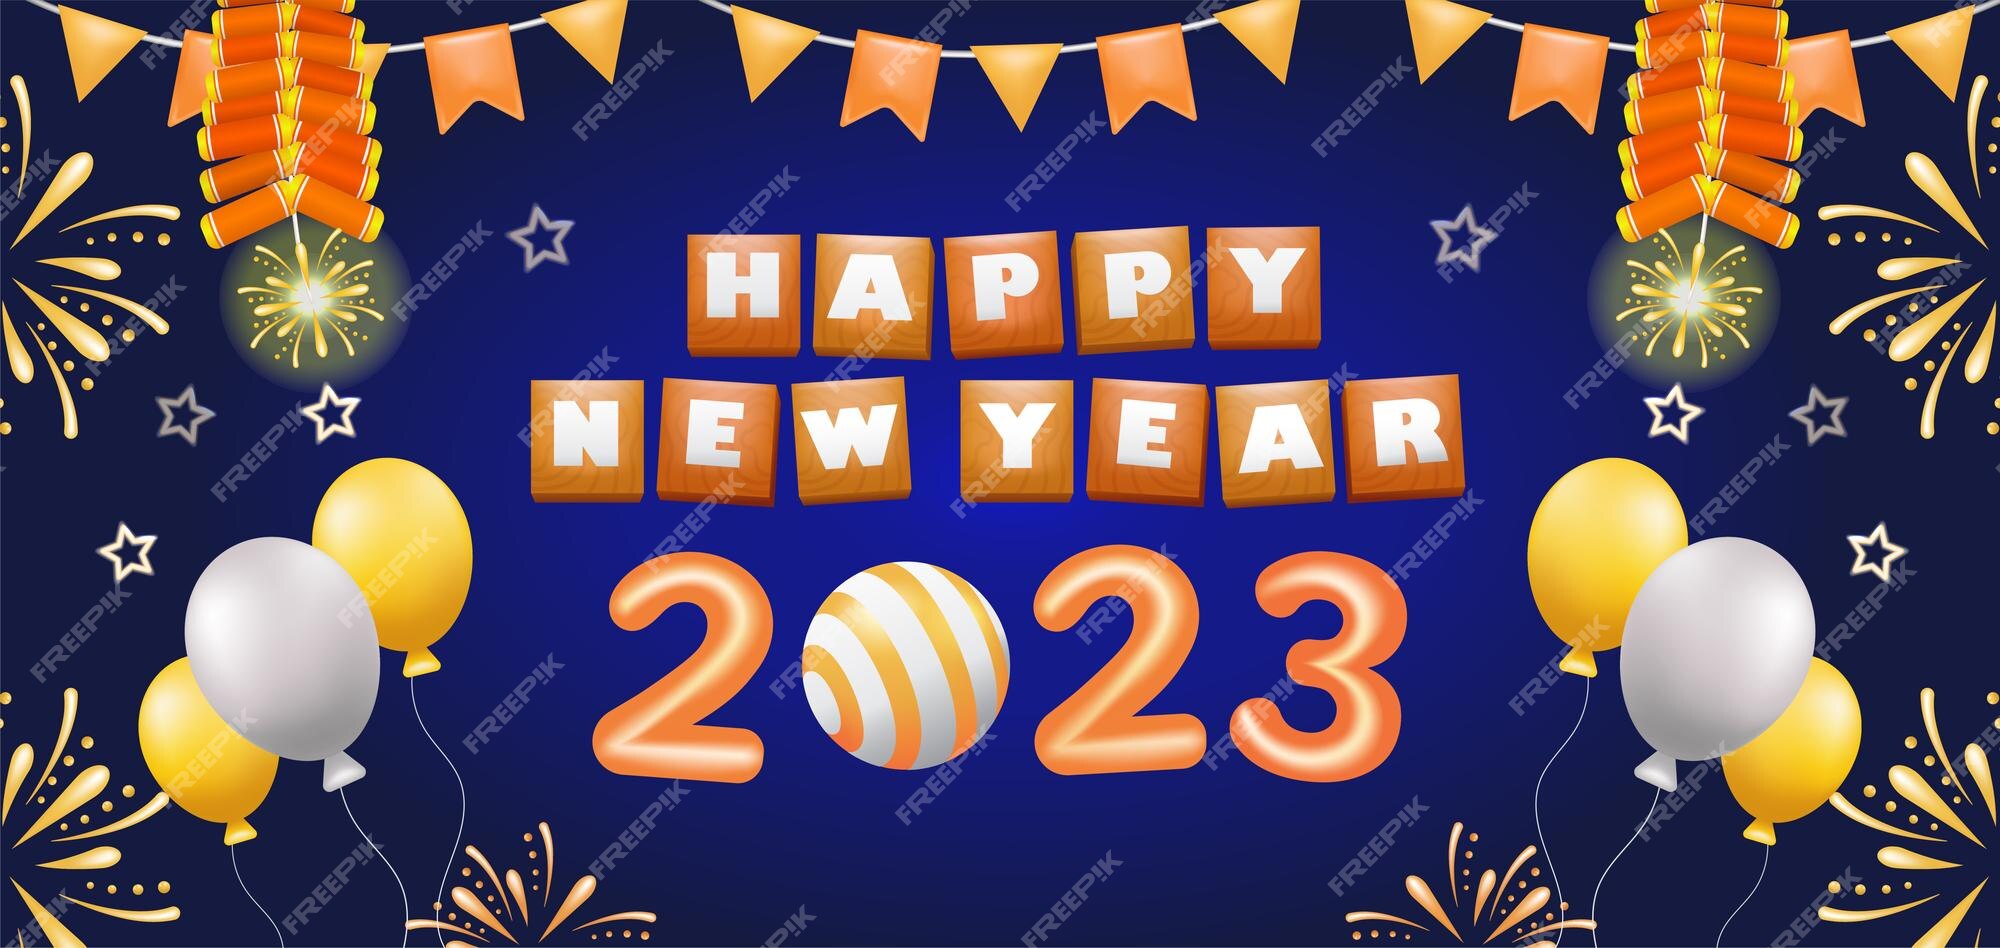 Preocupado El extraño Diálogo Feliz año nuevo 2023 ilustración 3d de petardos y fuegos artificiales con  adornos de globos | Vector Premium